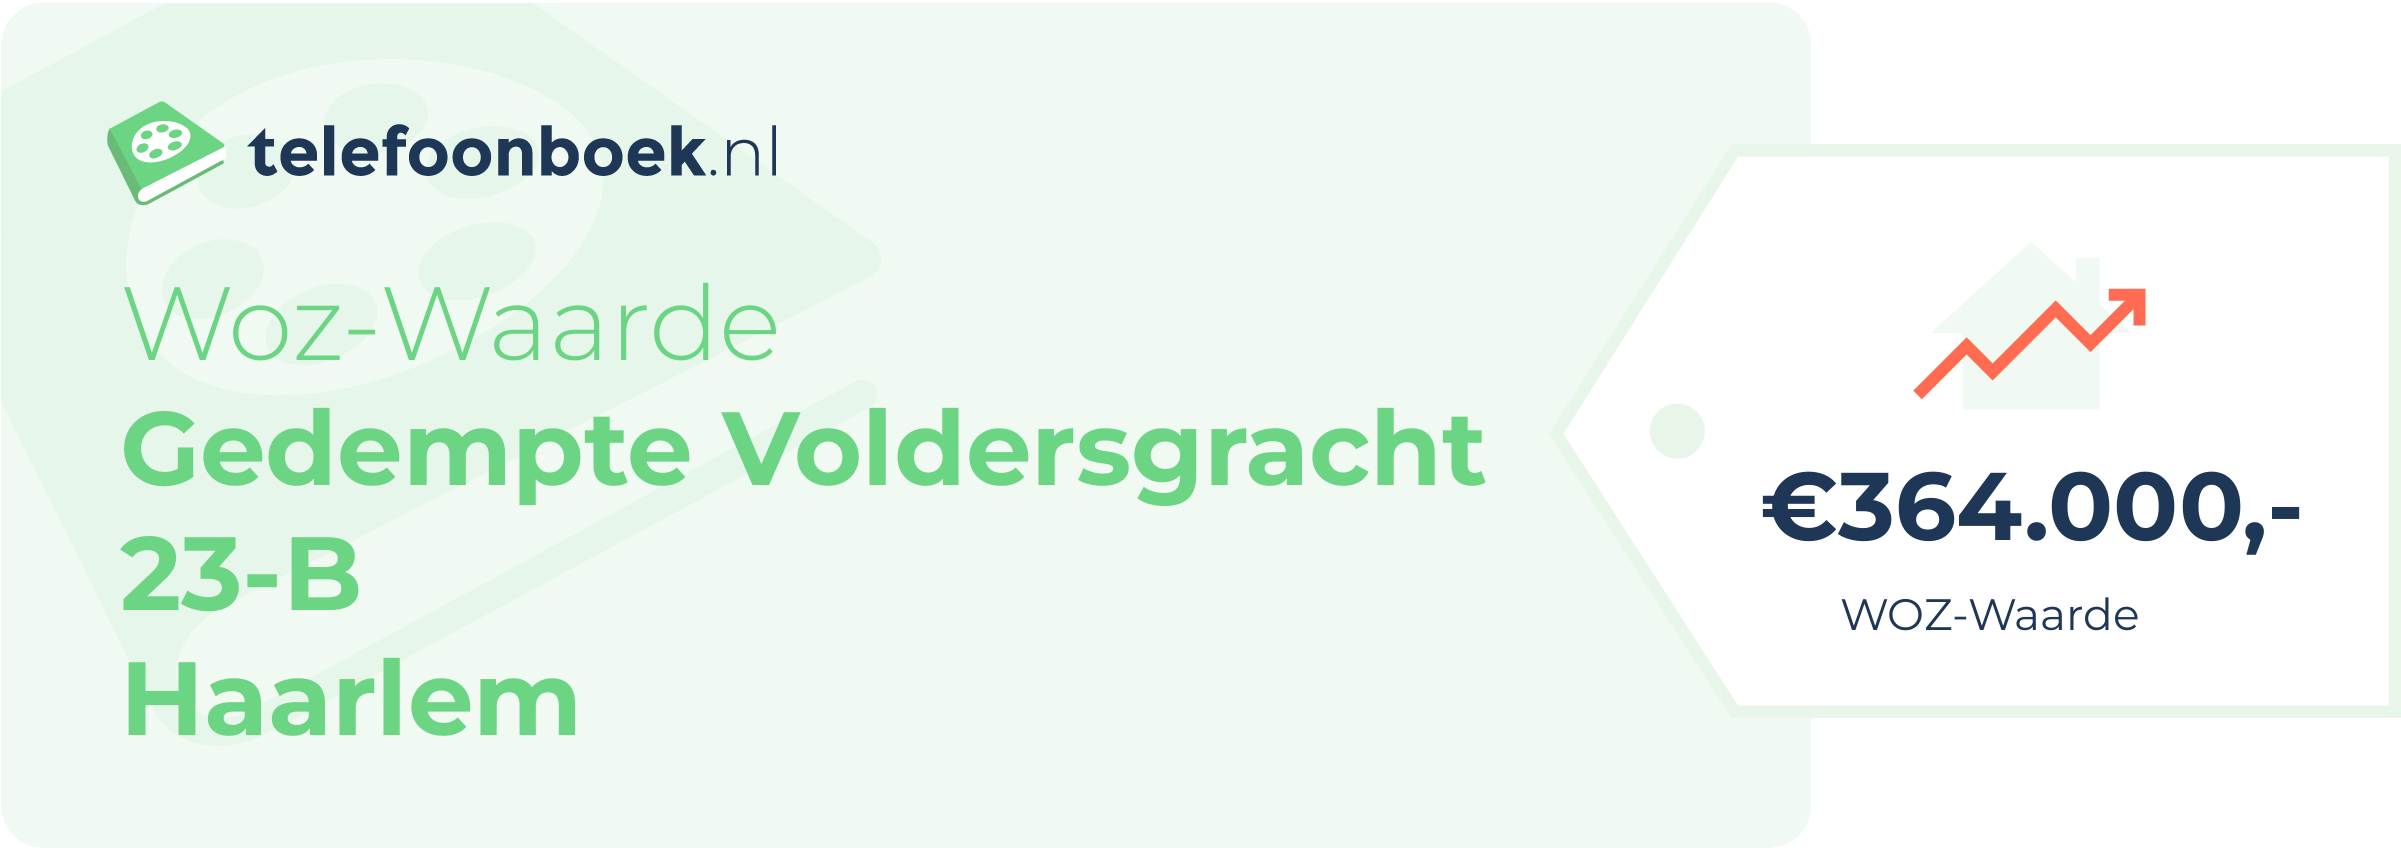 WOZ-waarde Gedempte Voldersgracht 23-B Haarlem